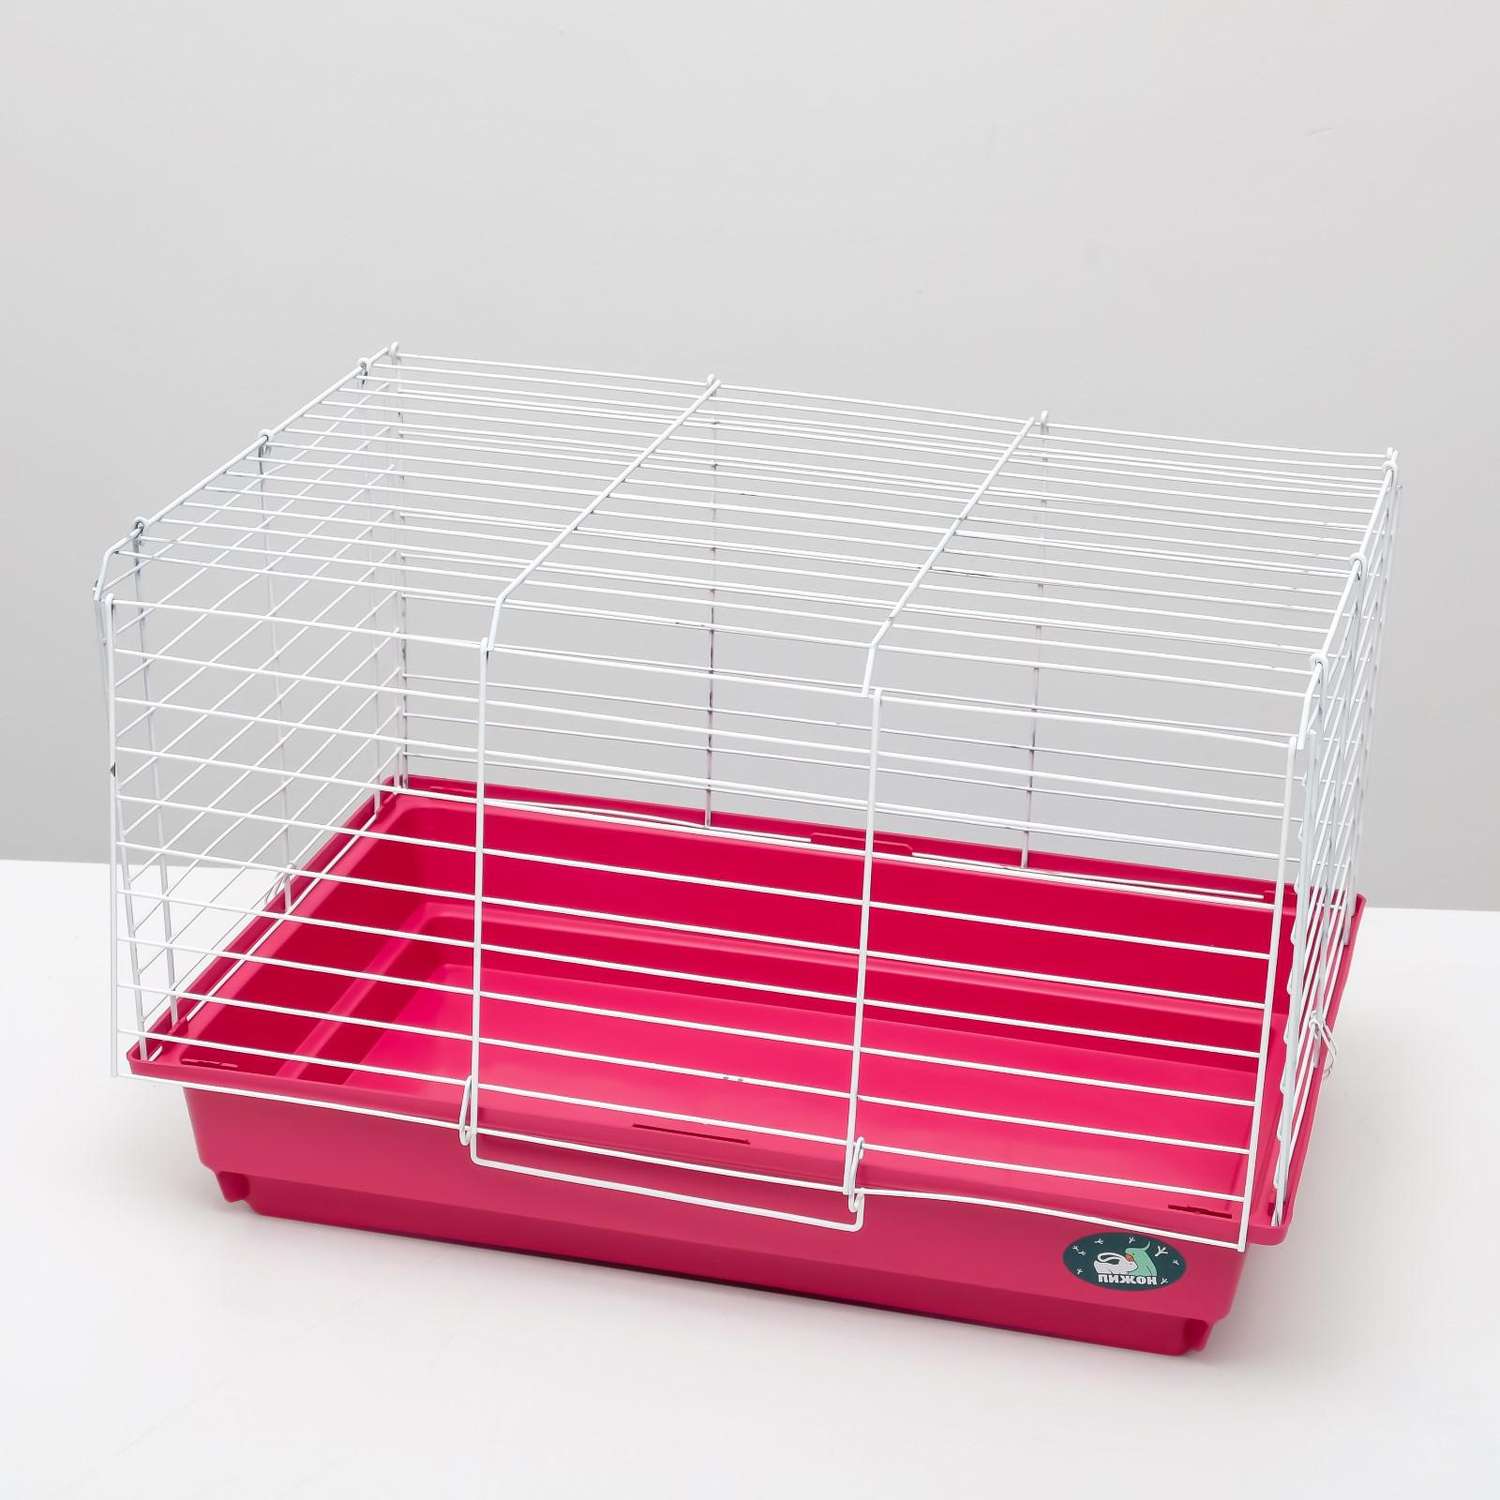 Клетка для кроликов Пижон морских свинок складная 58х40х38 см рубиновая - фото 3